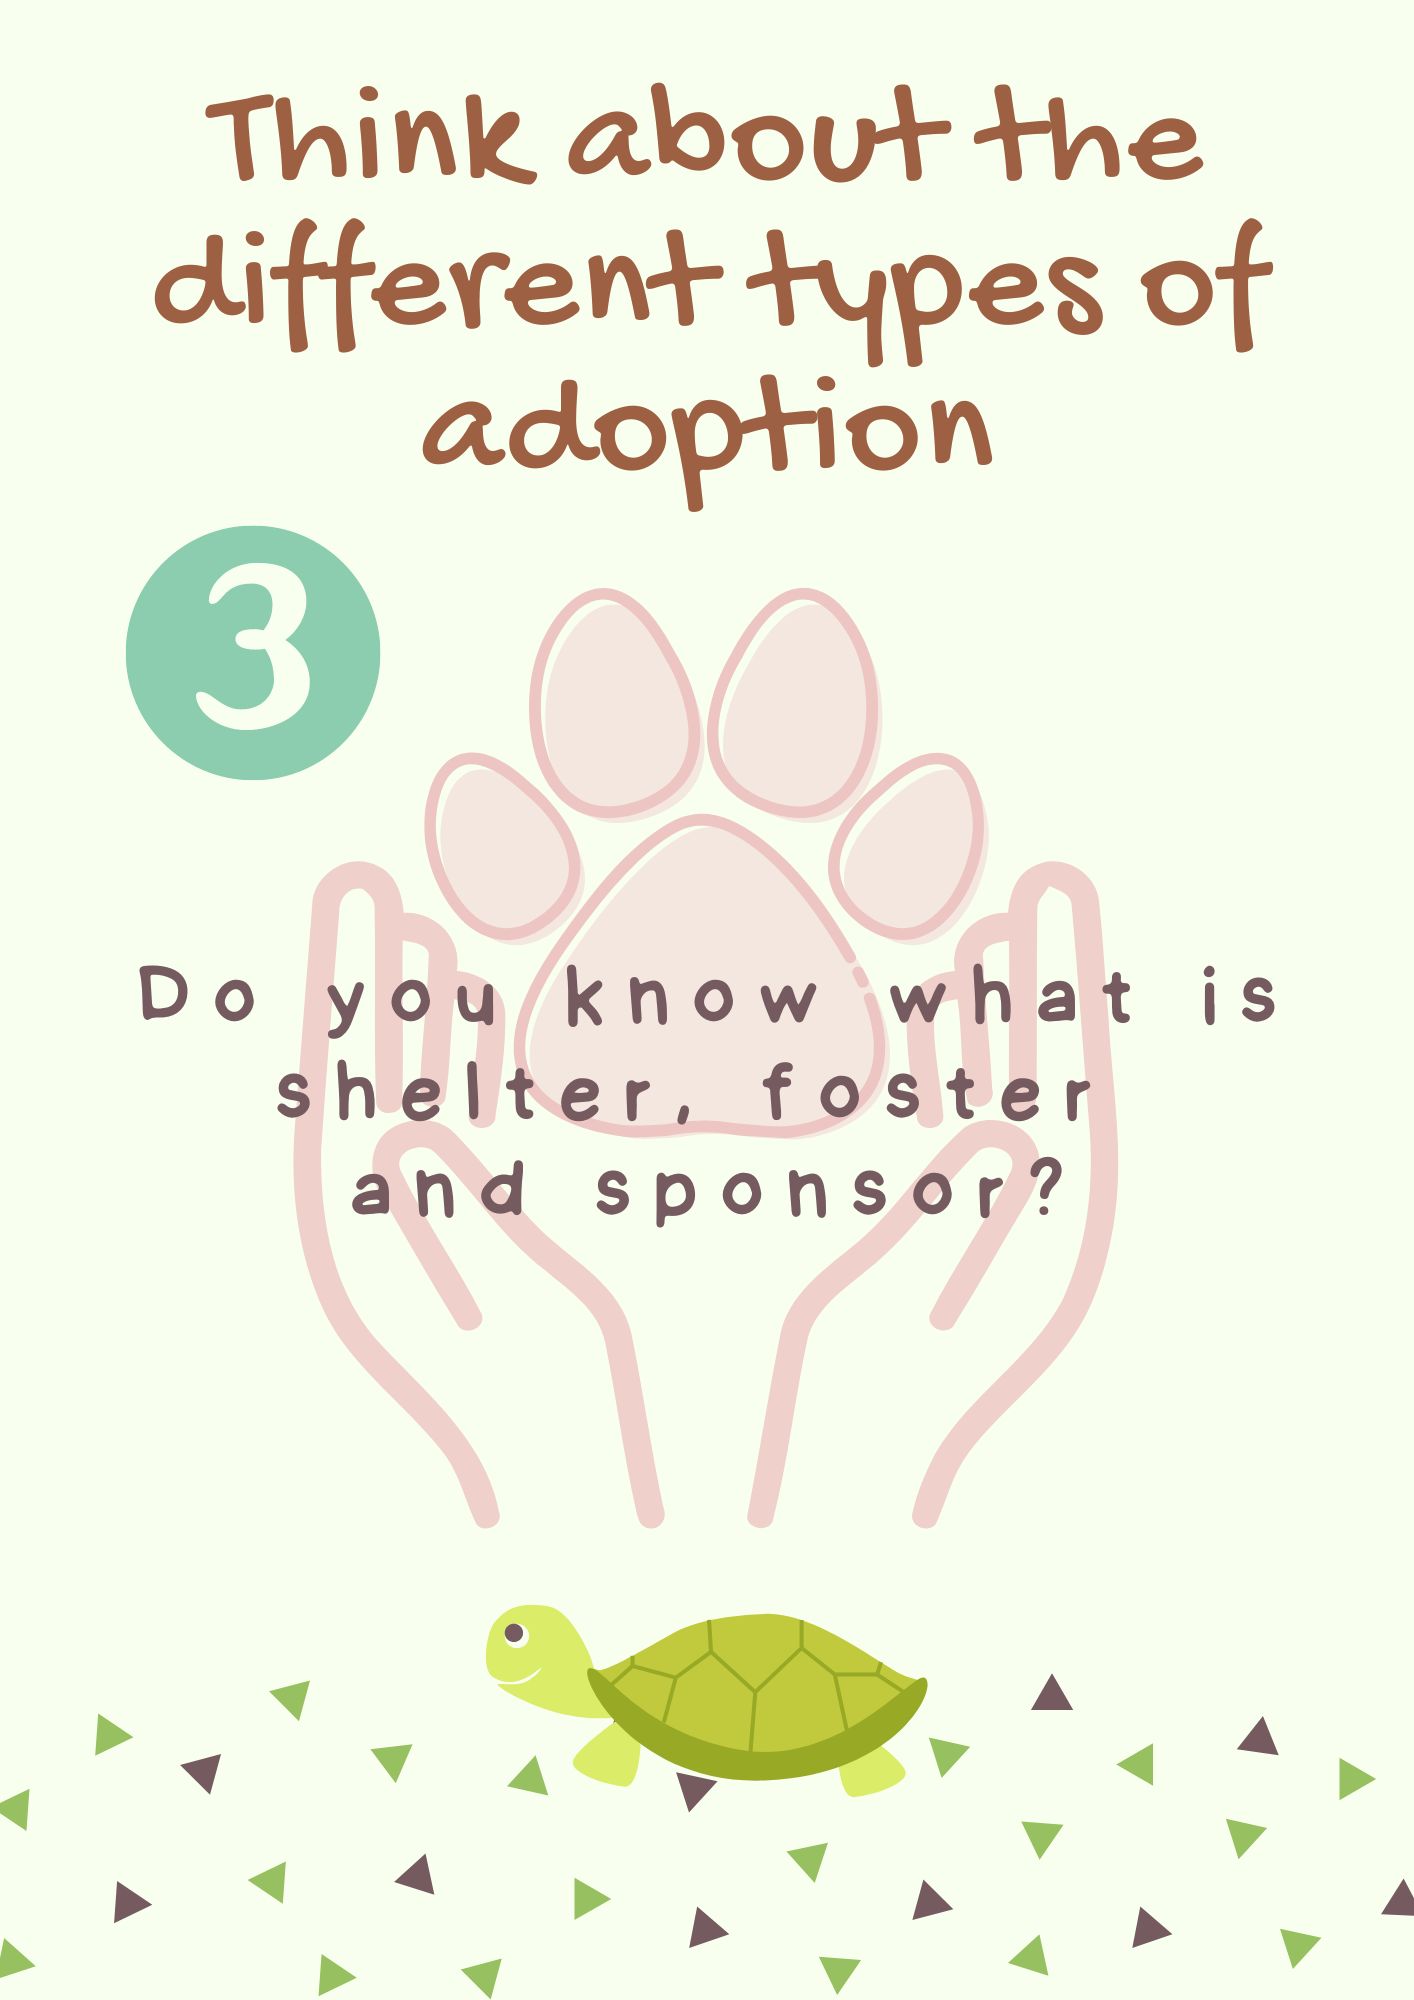 En la imagen puedes ver una infografía que te indica que pienses sobre los diferentes tipos de adopción